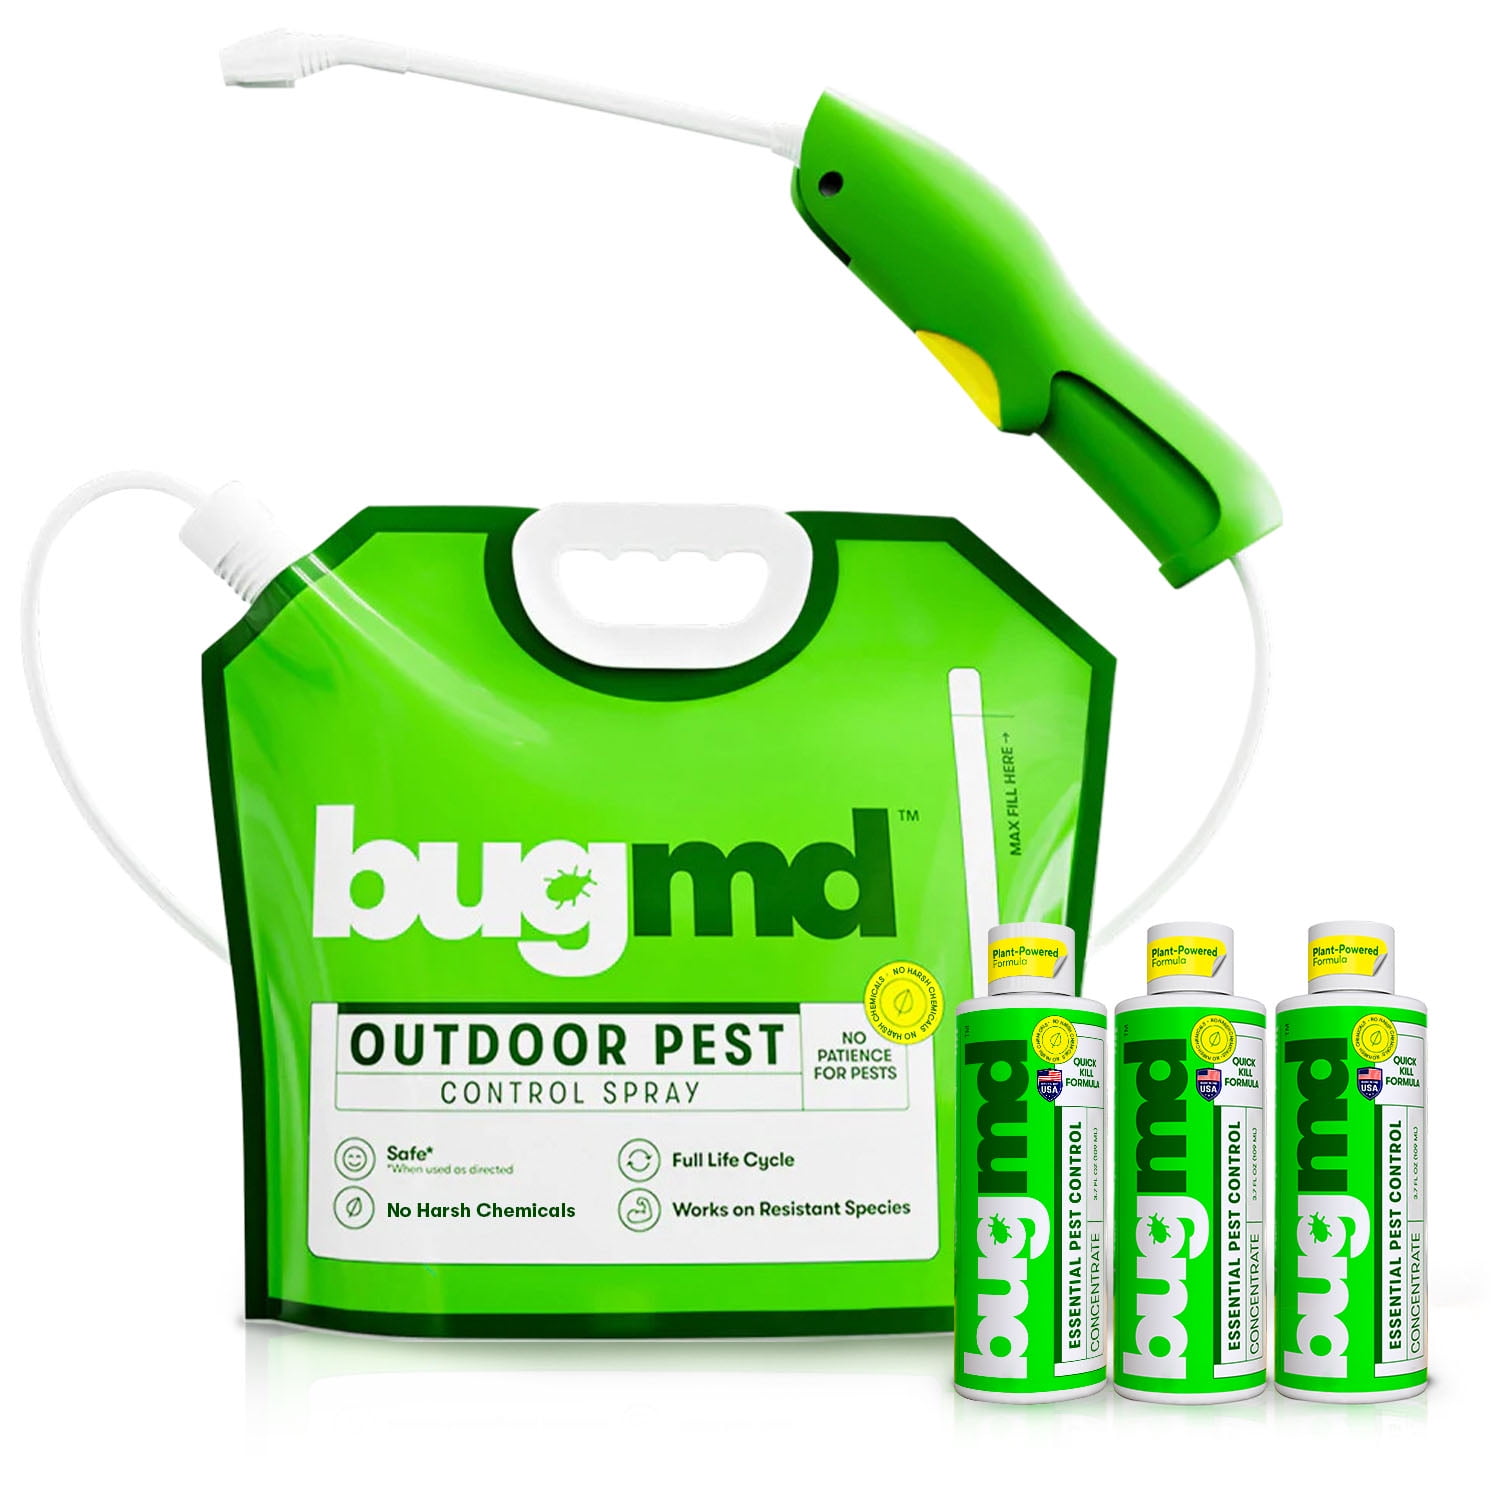 BugMD Bed Bug Trap (2 Pack, 14 Traps) - Bed Bug Prevention, Glue